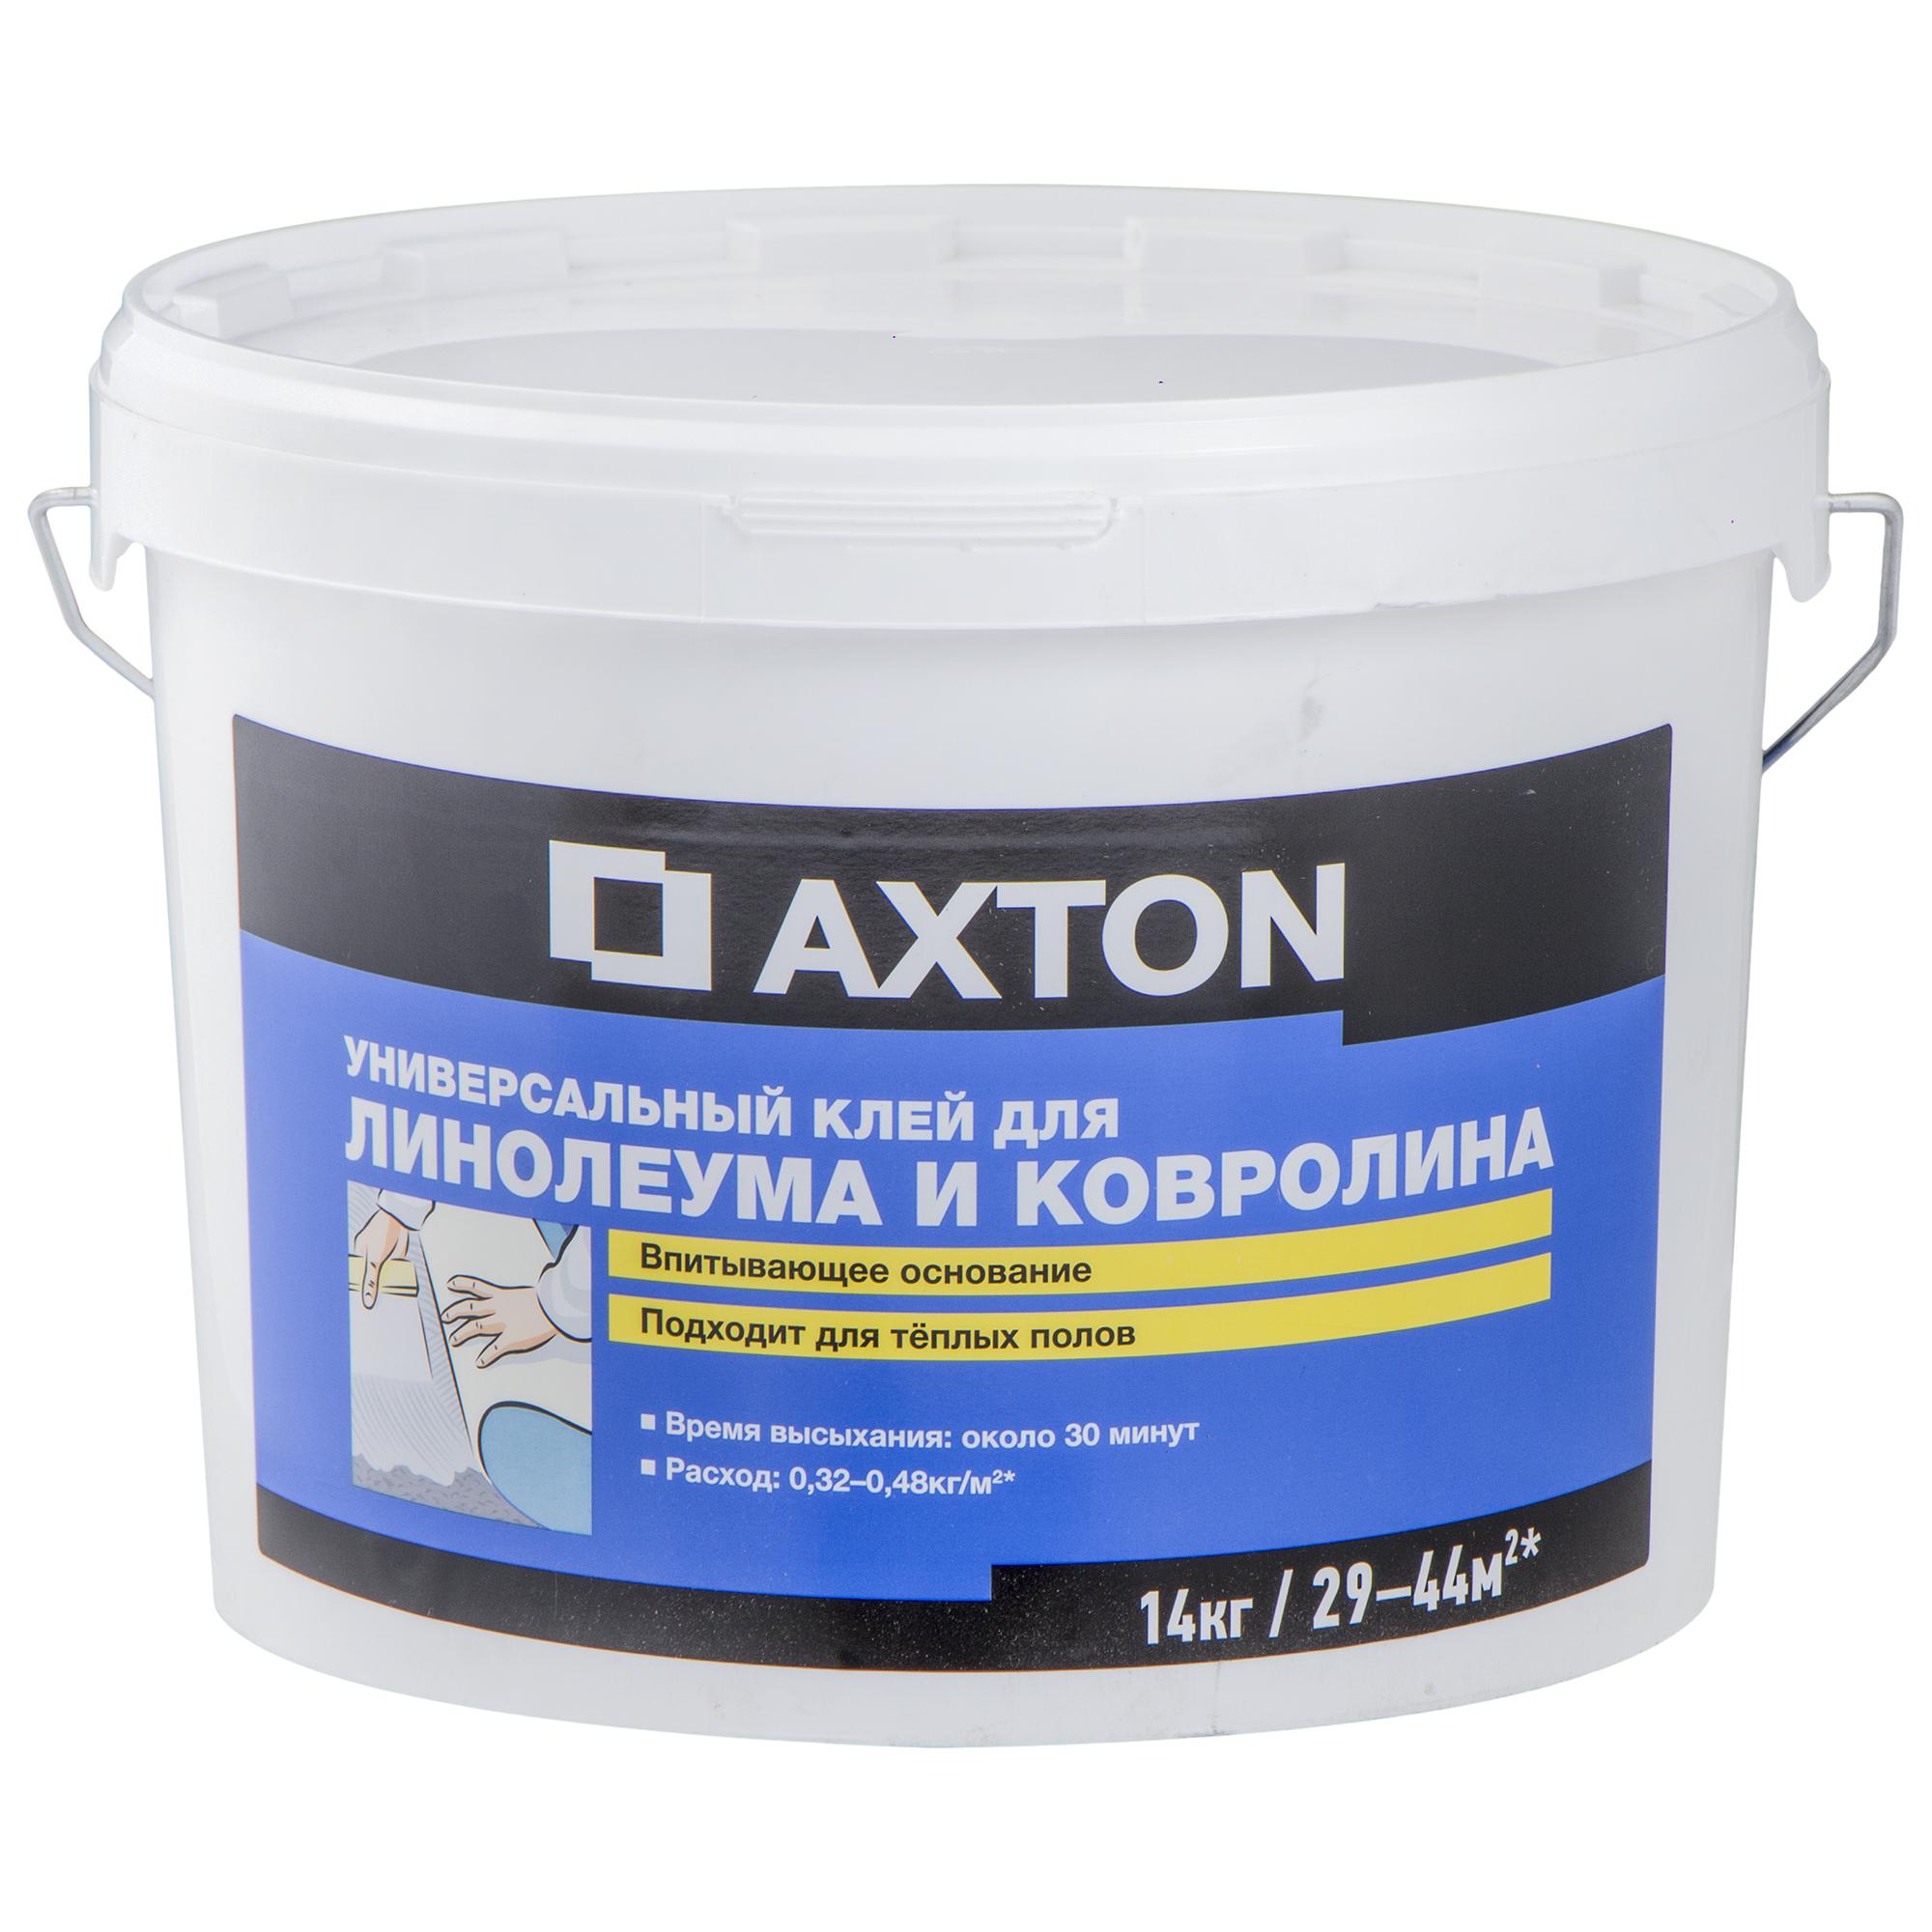  Axton универсальный для линолеума и ковролина, 14 кг –  в .